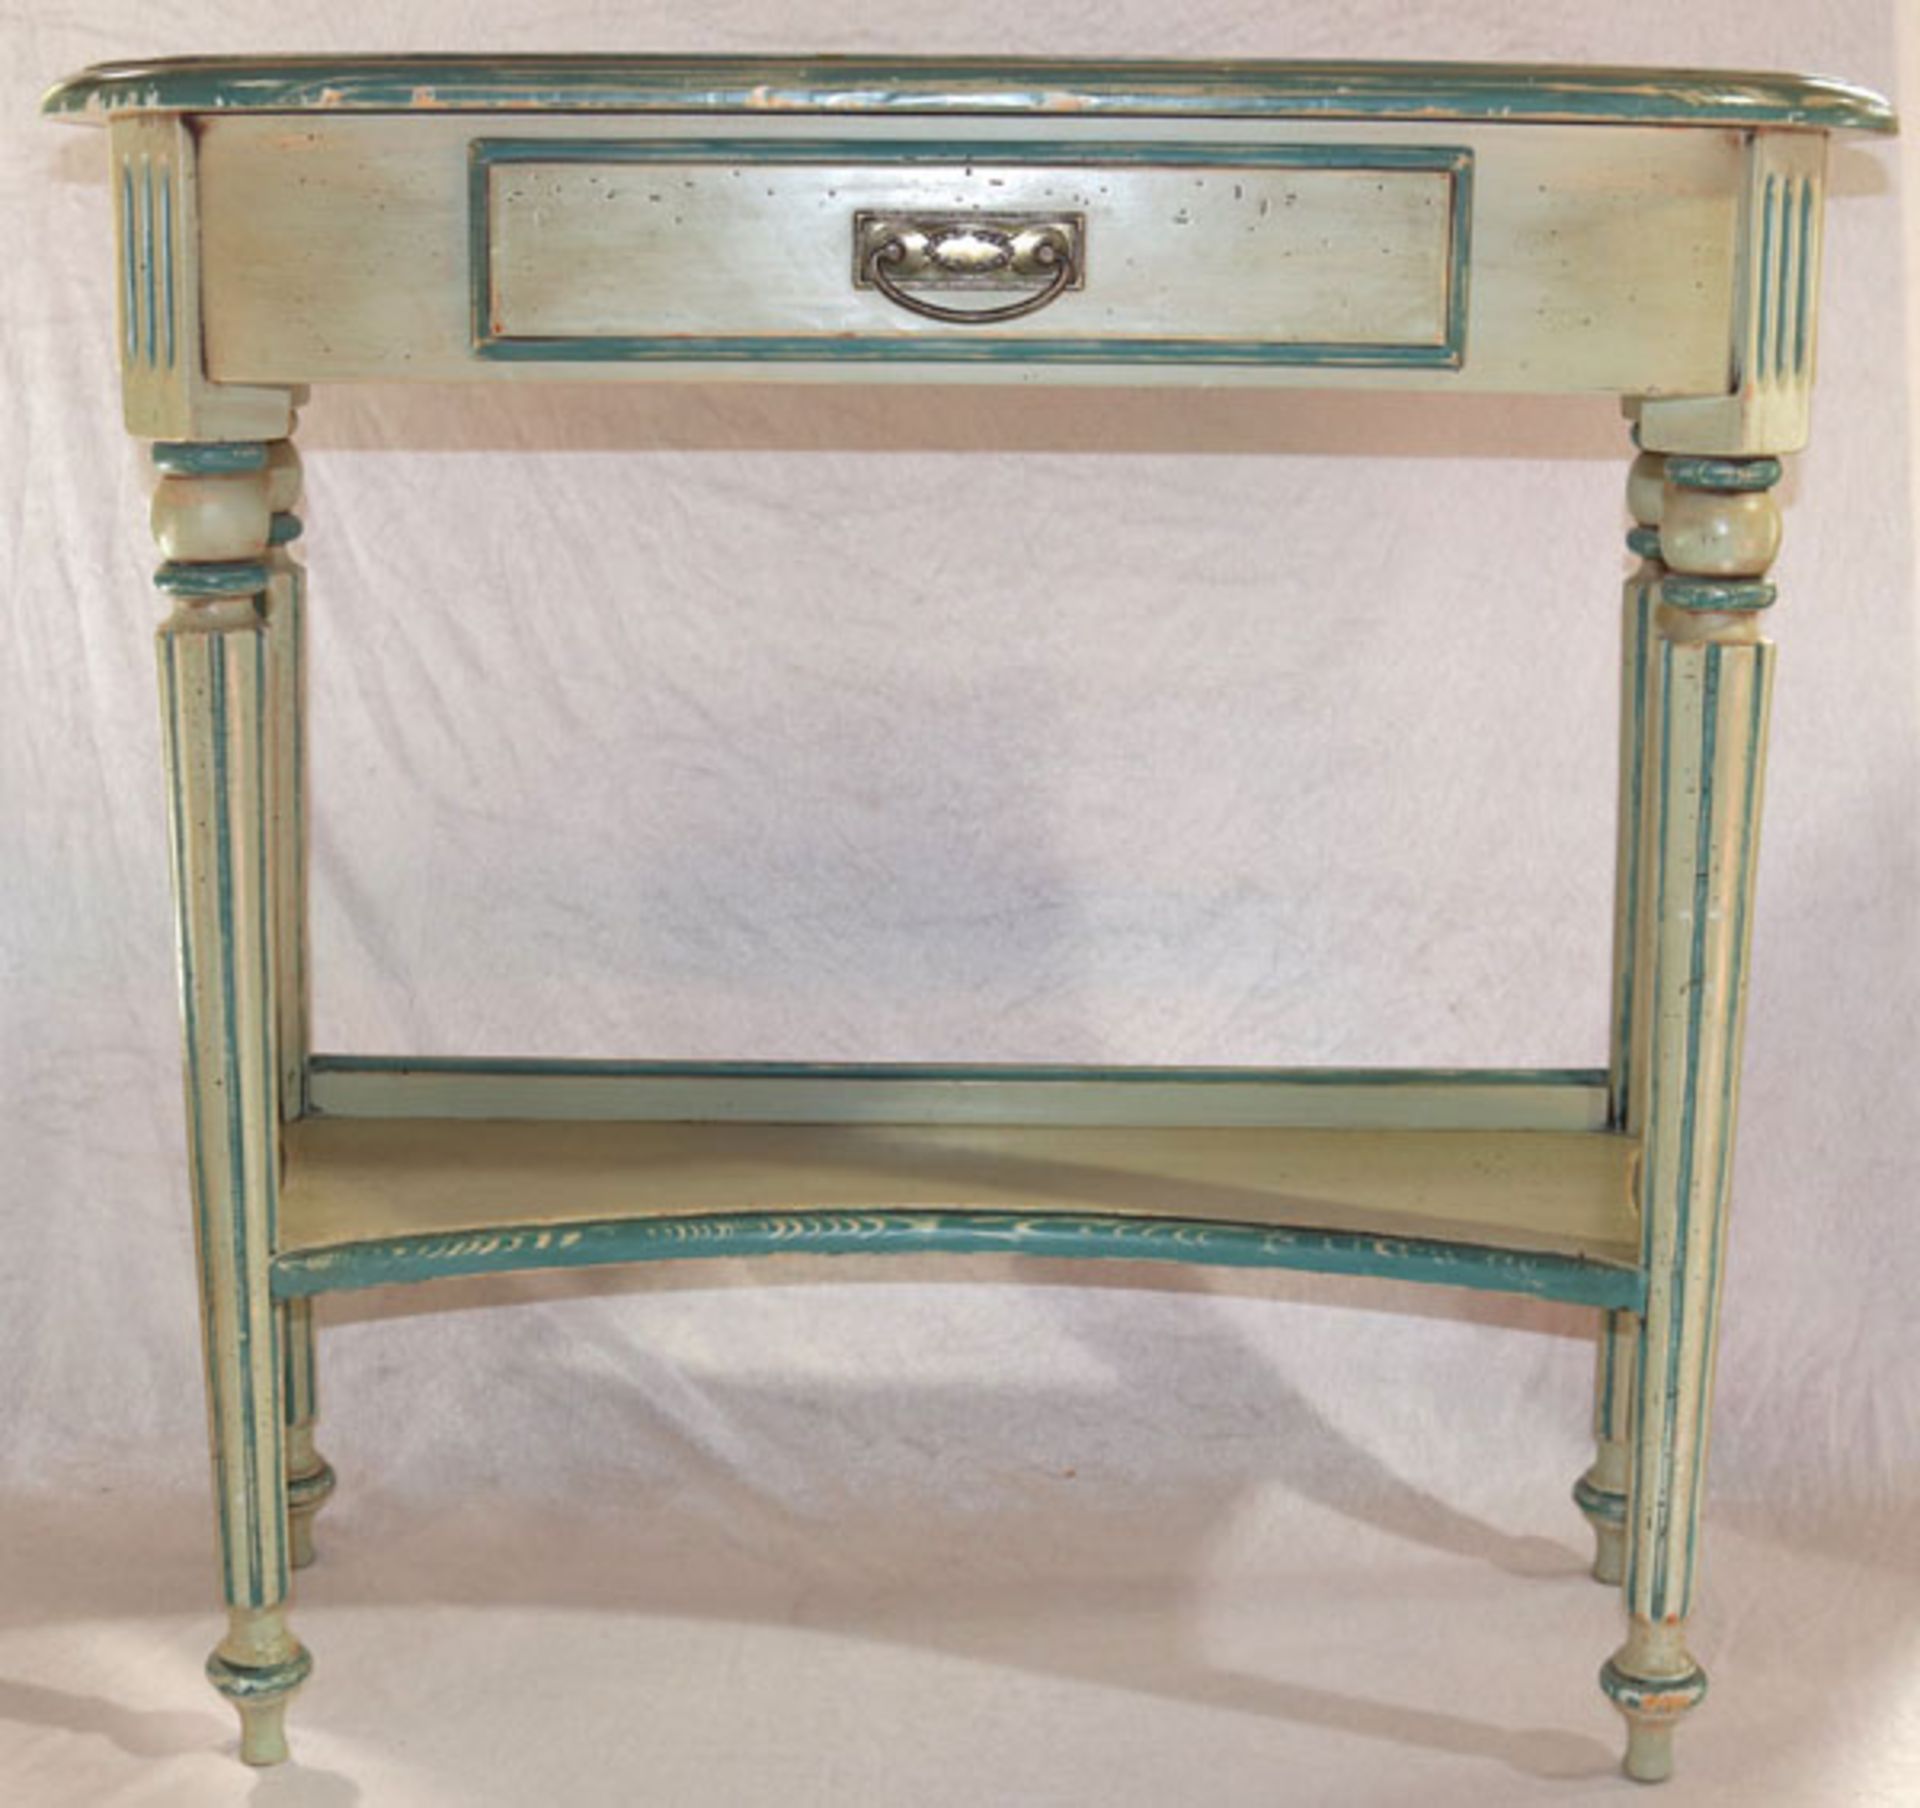 Wandtischchen, Korpus mit einer Schublade und Ablage, grün/blau bemalt, Farbe teils berieben, H 80